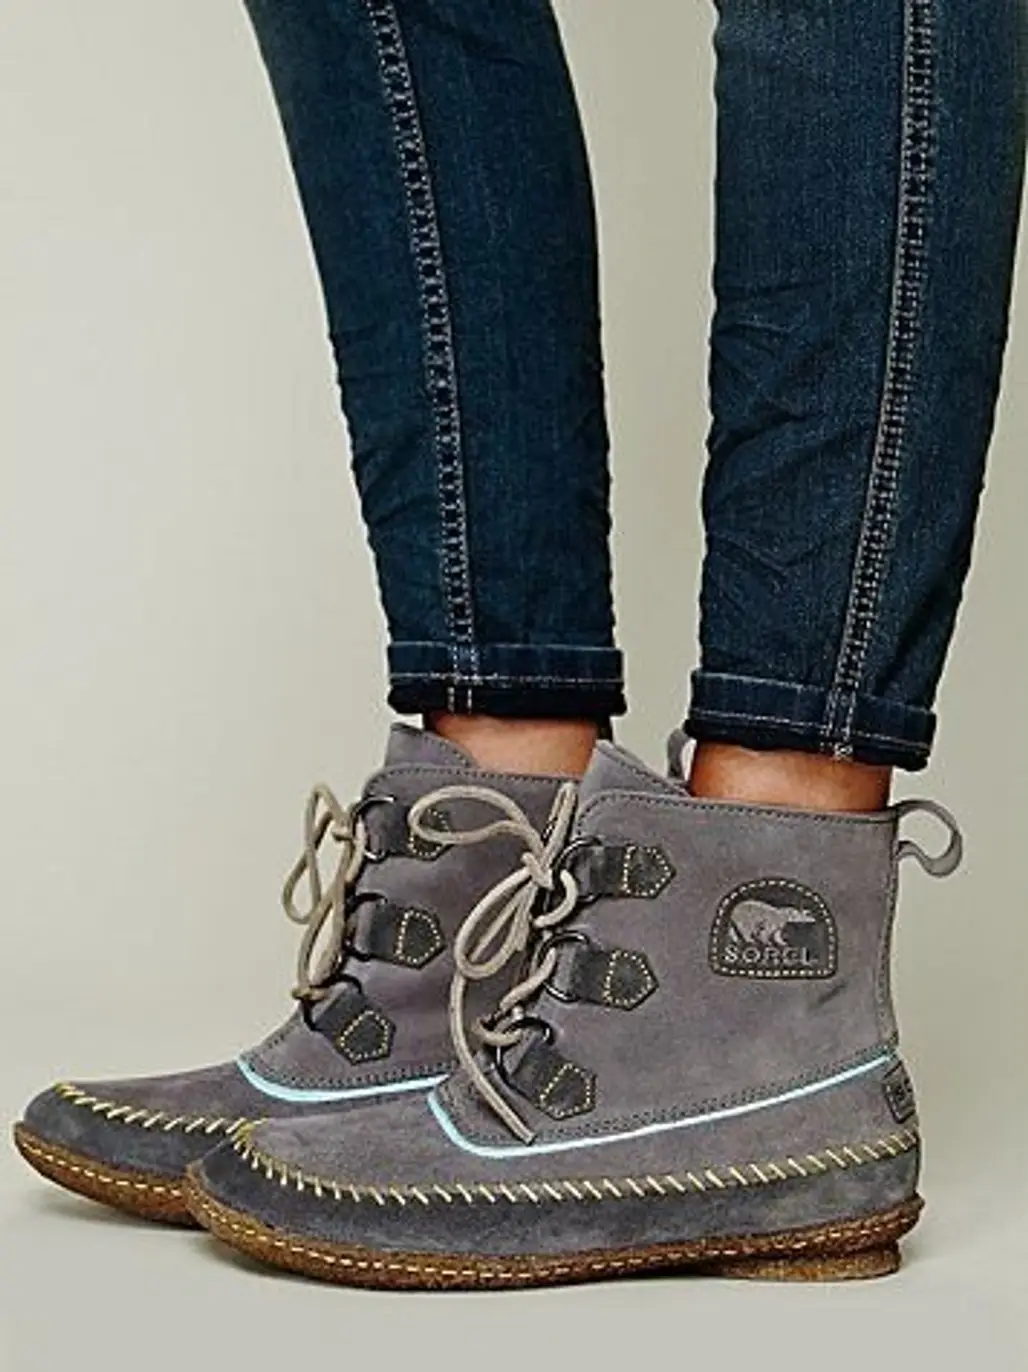 footwear,boot,shoe,leather,pattern,